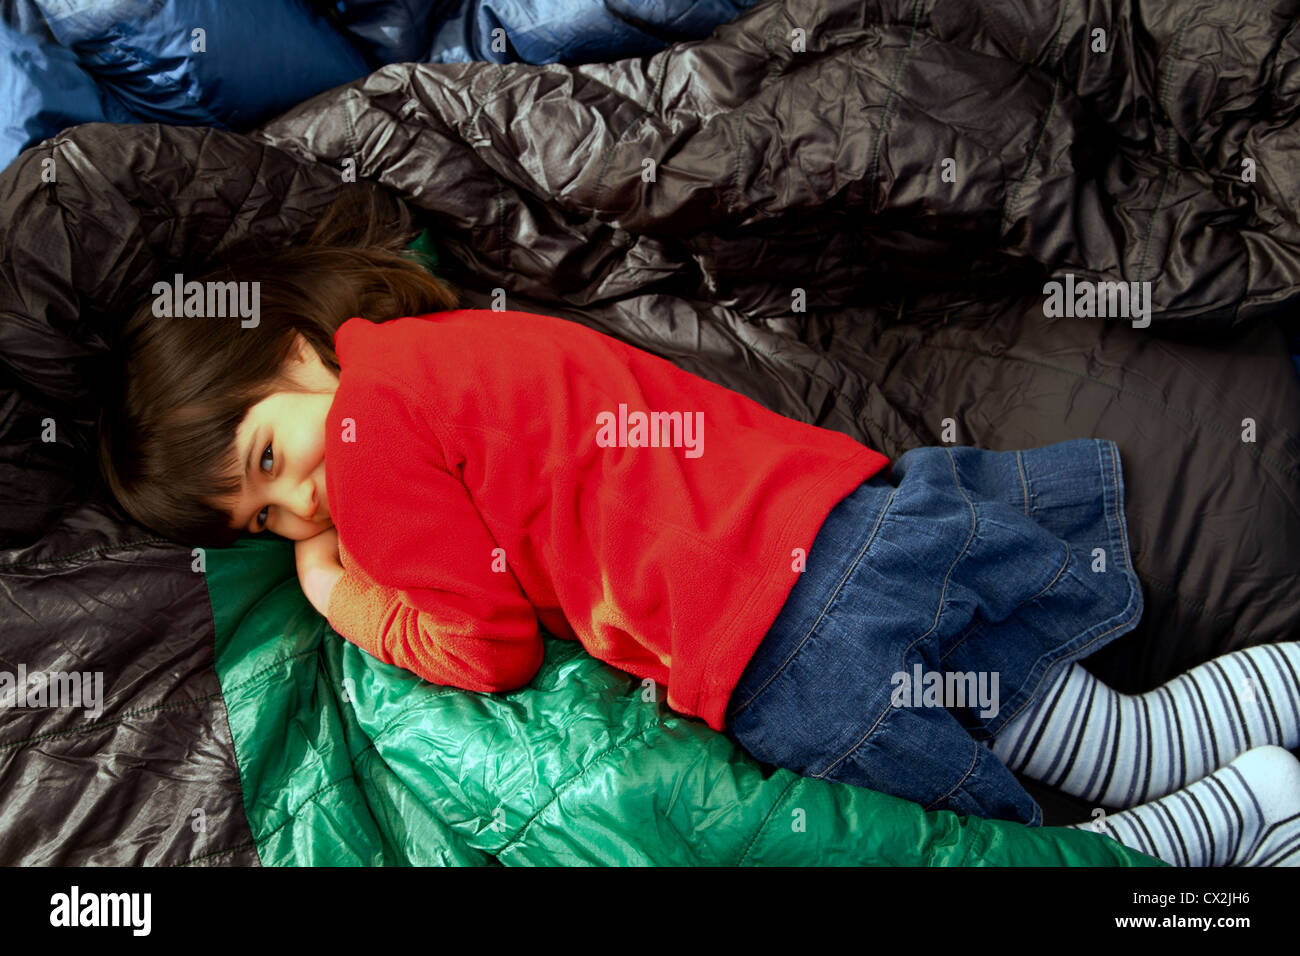 Petite fille couchée sur certains sacs de couchage dans une tente. Banque D'Images